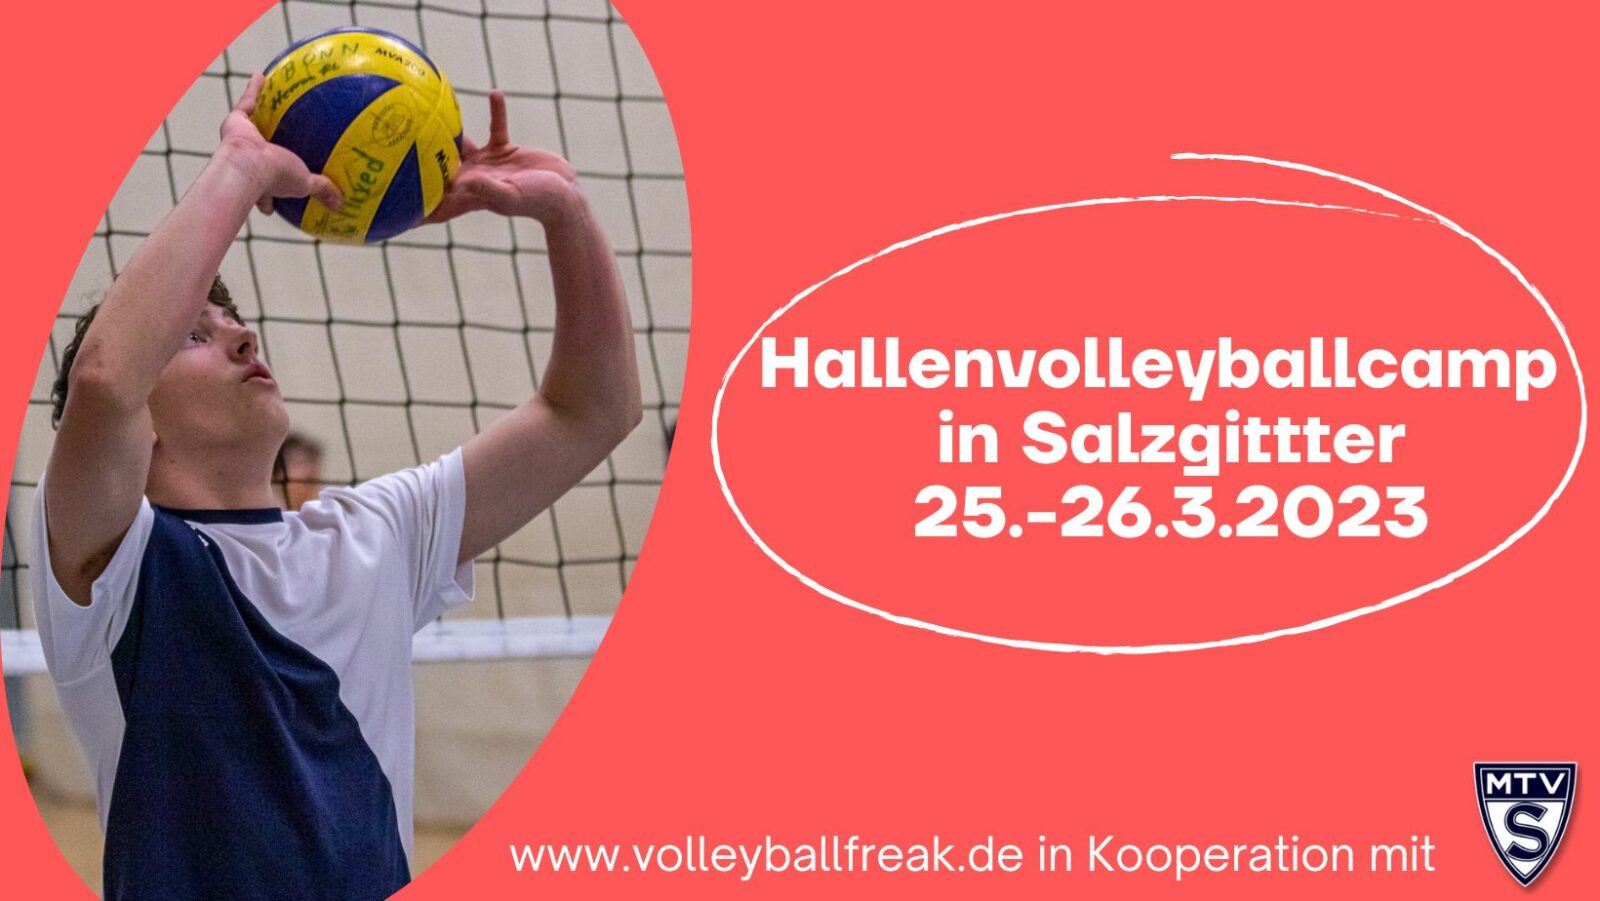 Volleyballcamp vom 25.-26.3.2023 in Salzgitter